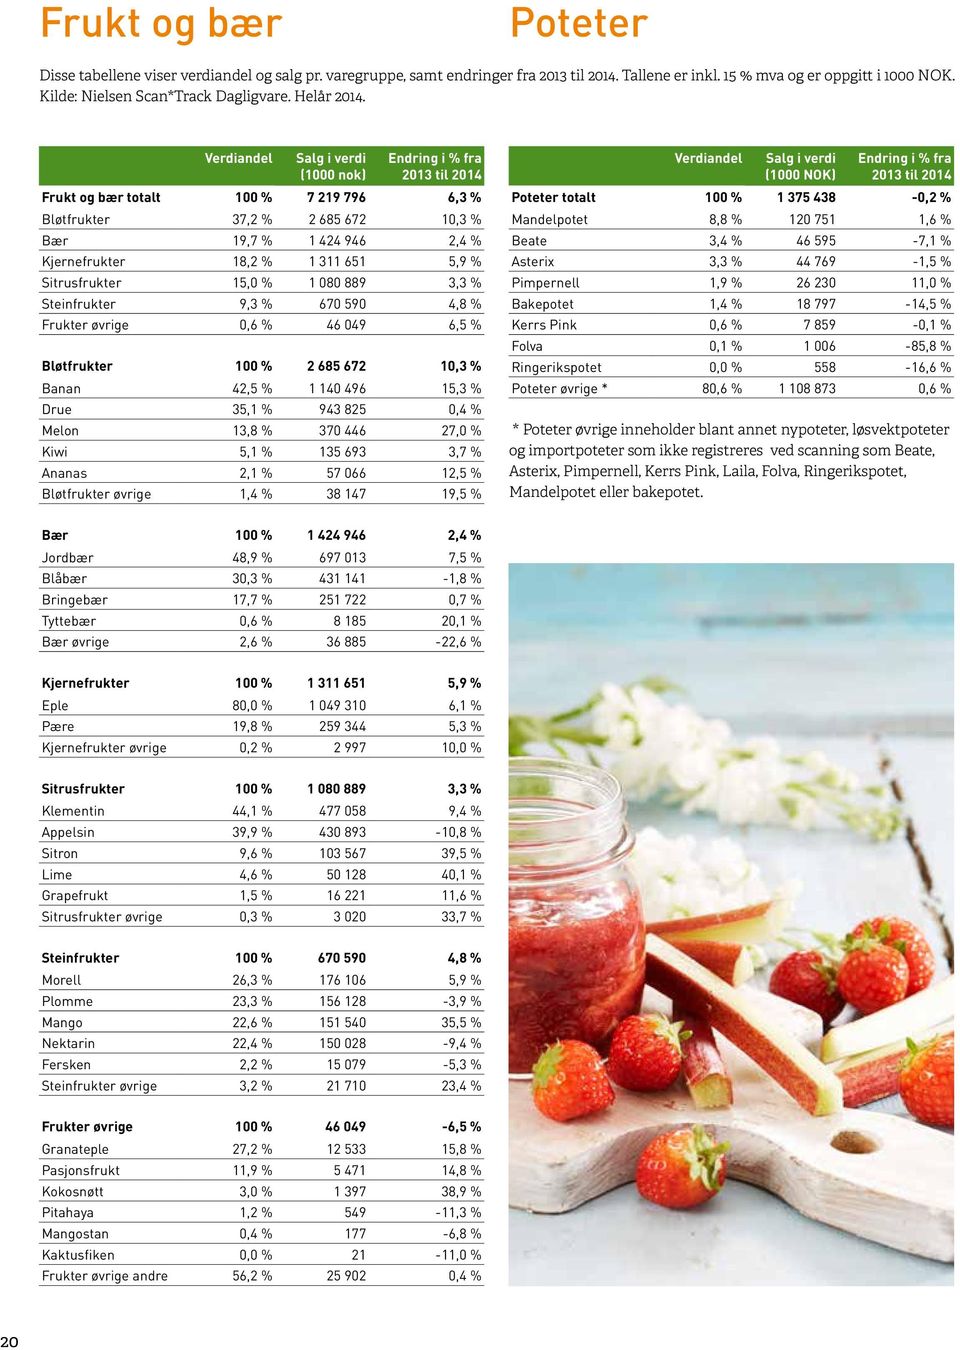 Verdiandel Salg i verdi (1000 nok) Endring i % fra 2013 til 2014 Frukt og bær totalt 100 % 7 219 796 6,3 % Bløtfrukter 37,2 % 2 685 672 10,3 % Bær 19,7 % 1 424 946 2,4 % Kjernefrukter 18,2 % 1 311